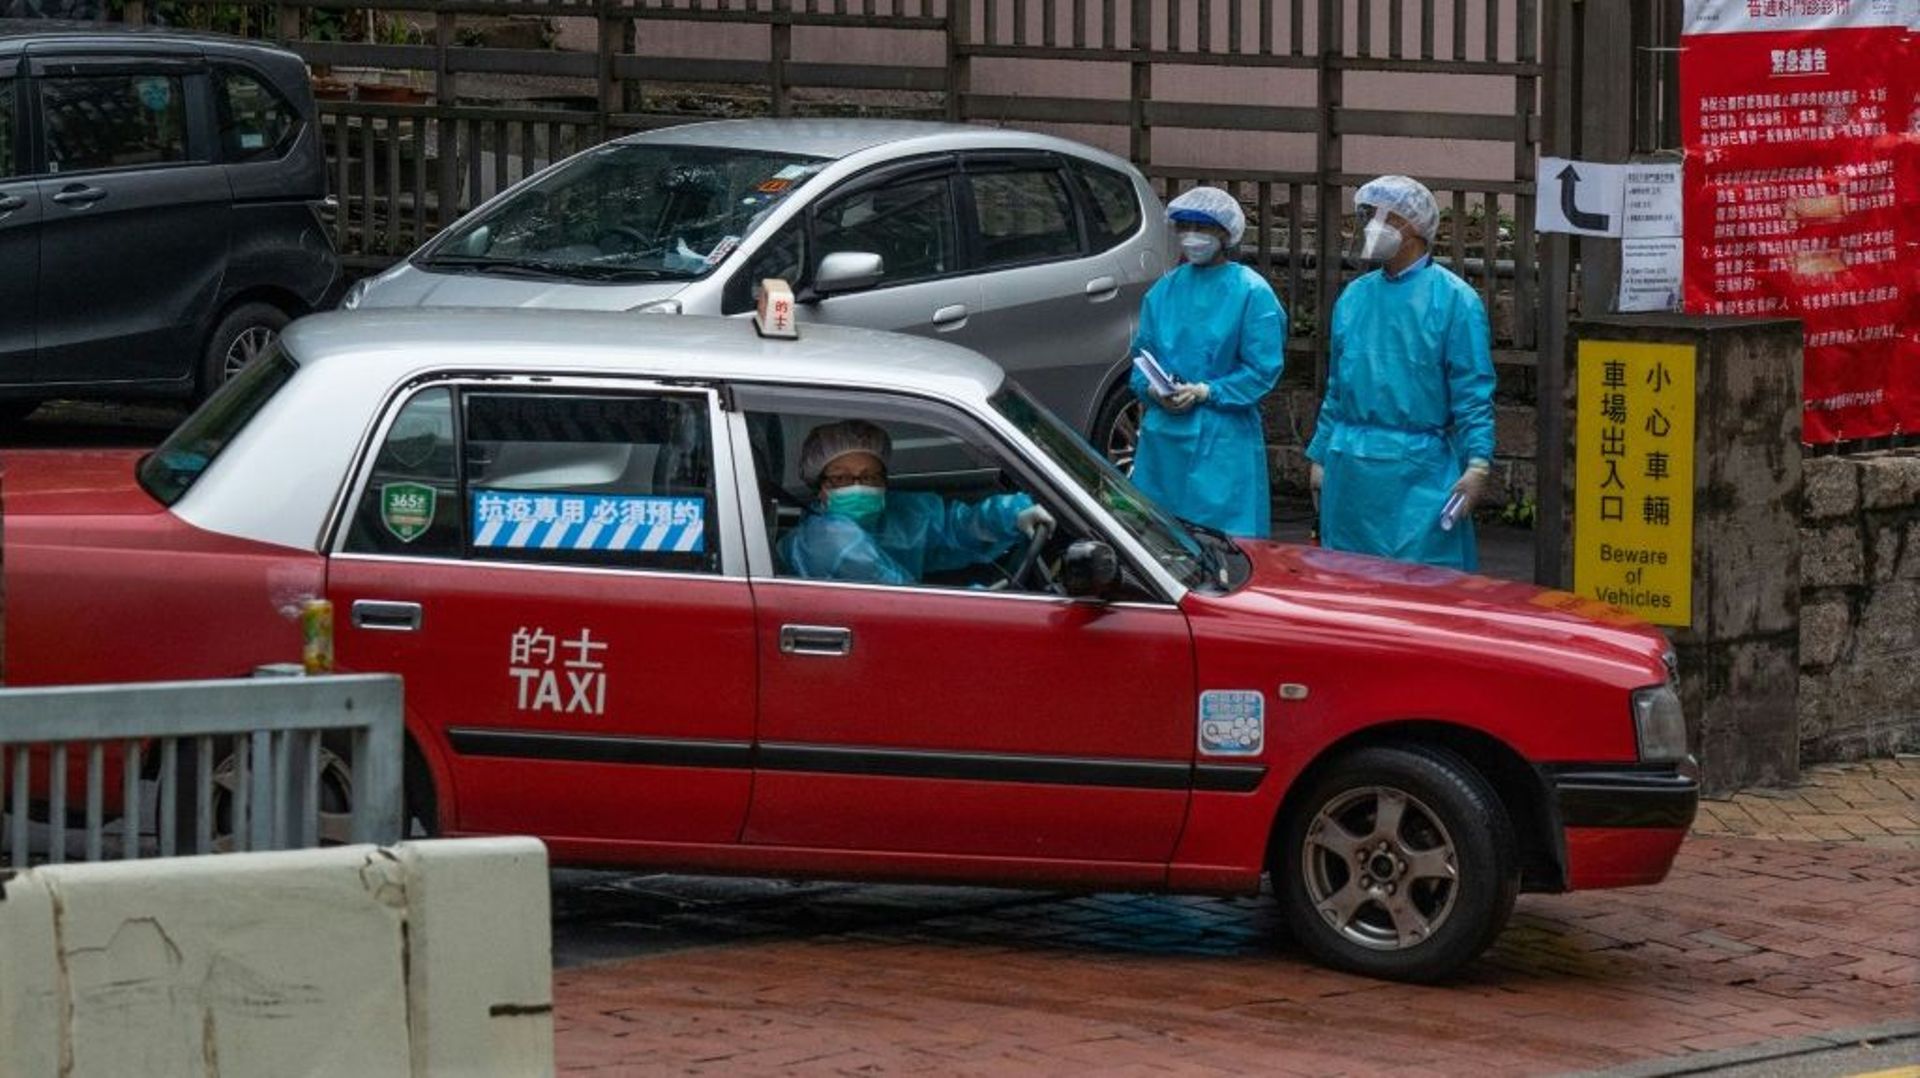 Un taxi dédié au transport des patients Covid-19 quitte une clinique dédiée dans le quartier de Shau Kei à Hong Kong le 19 février 2022